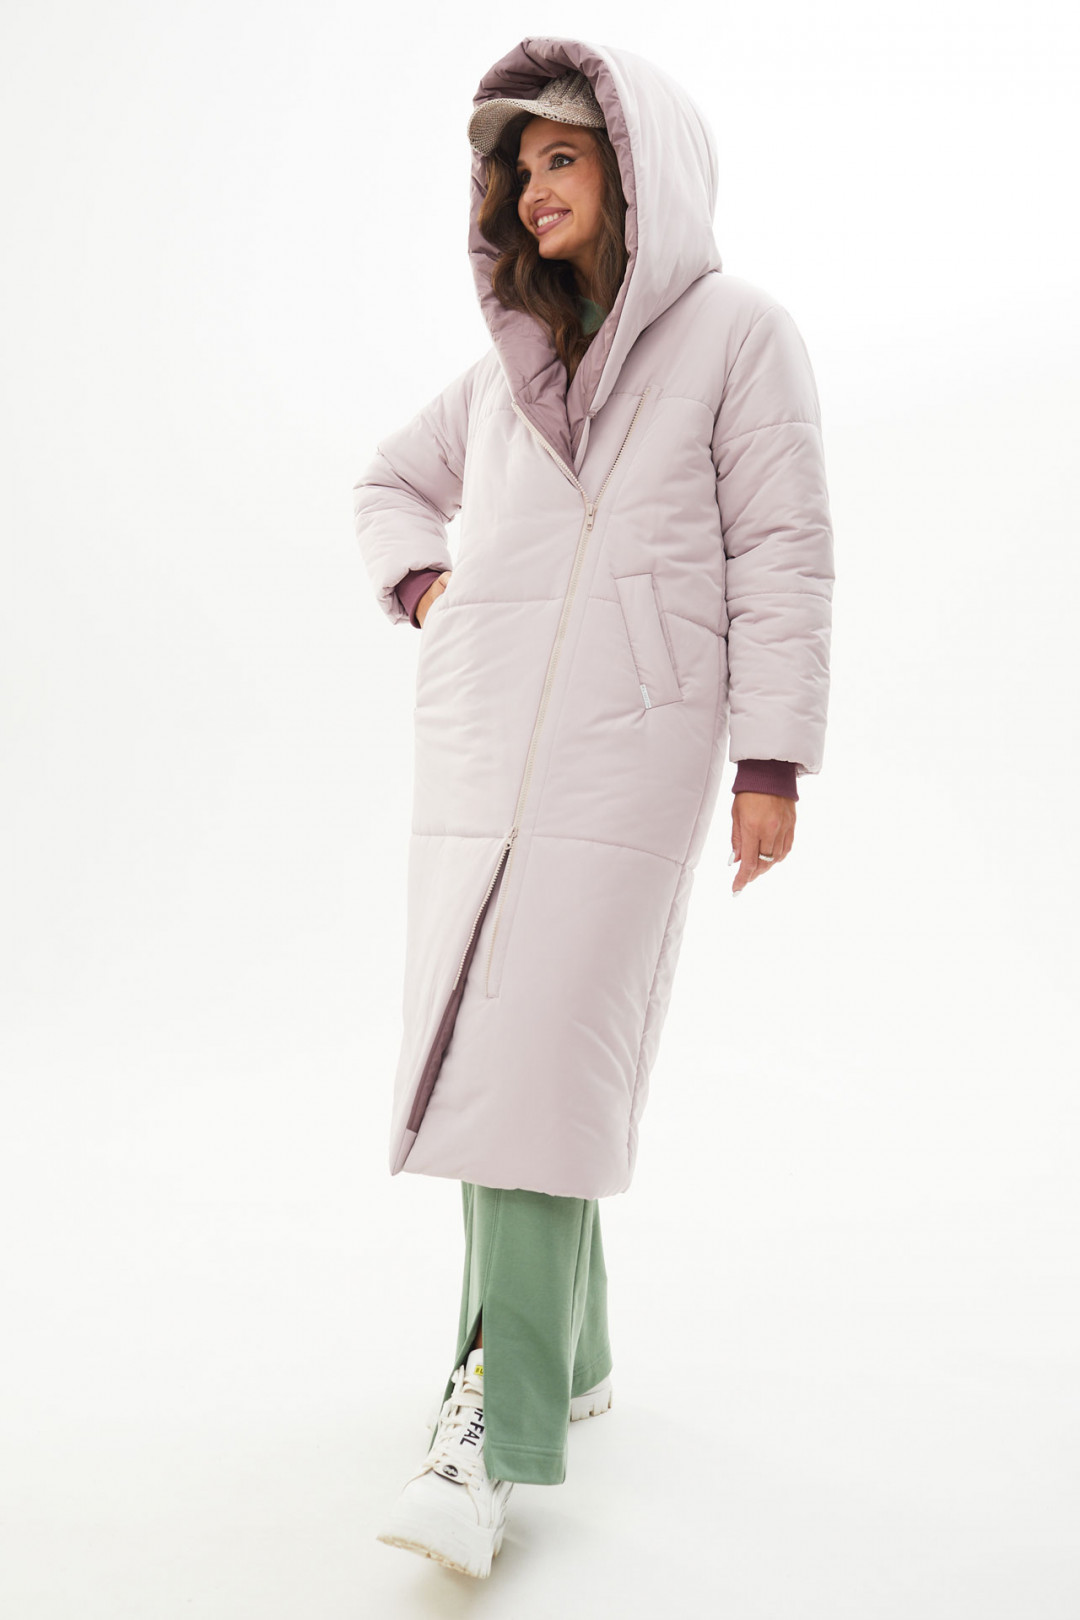 Пальто MisLana С846/1 розовая дымка